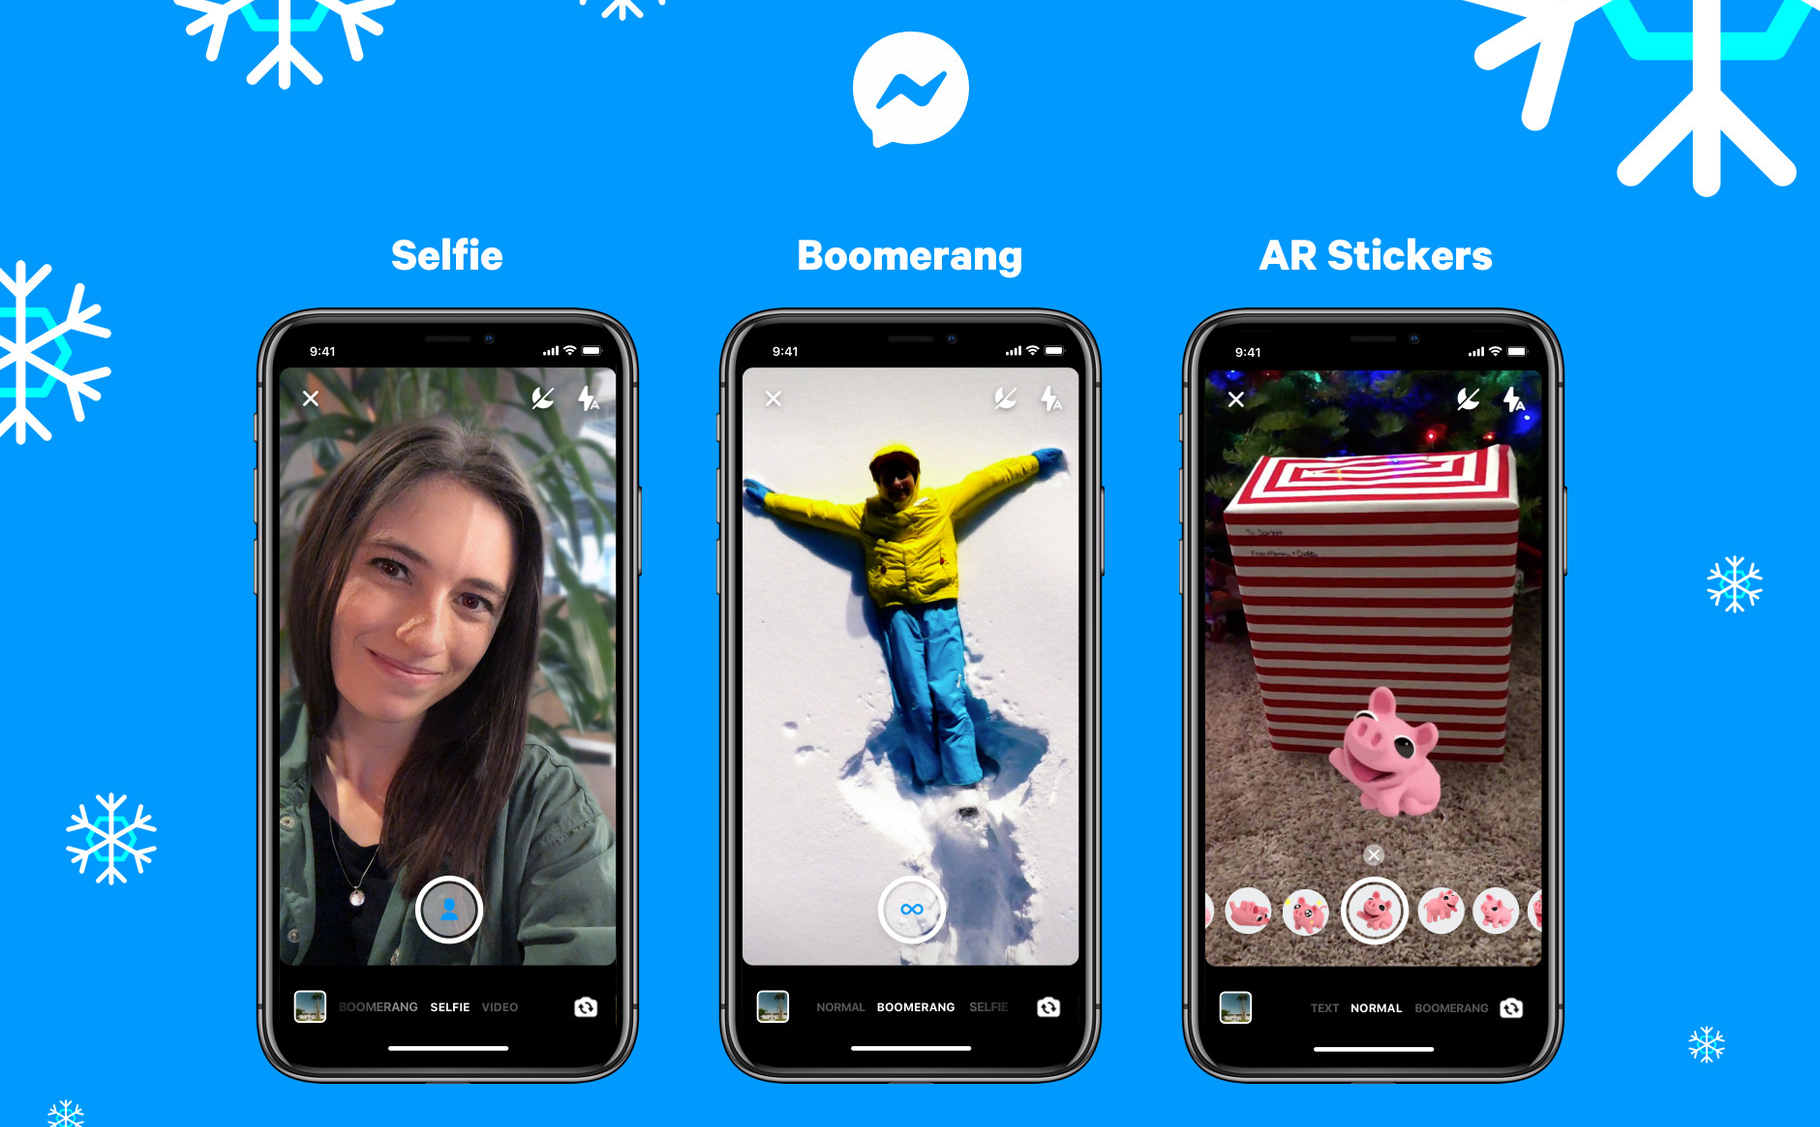 Facebook cập nhật tính năng Boomerang, selfie xóa phông và sticker AR cho Messenger